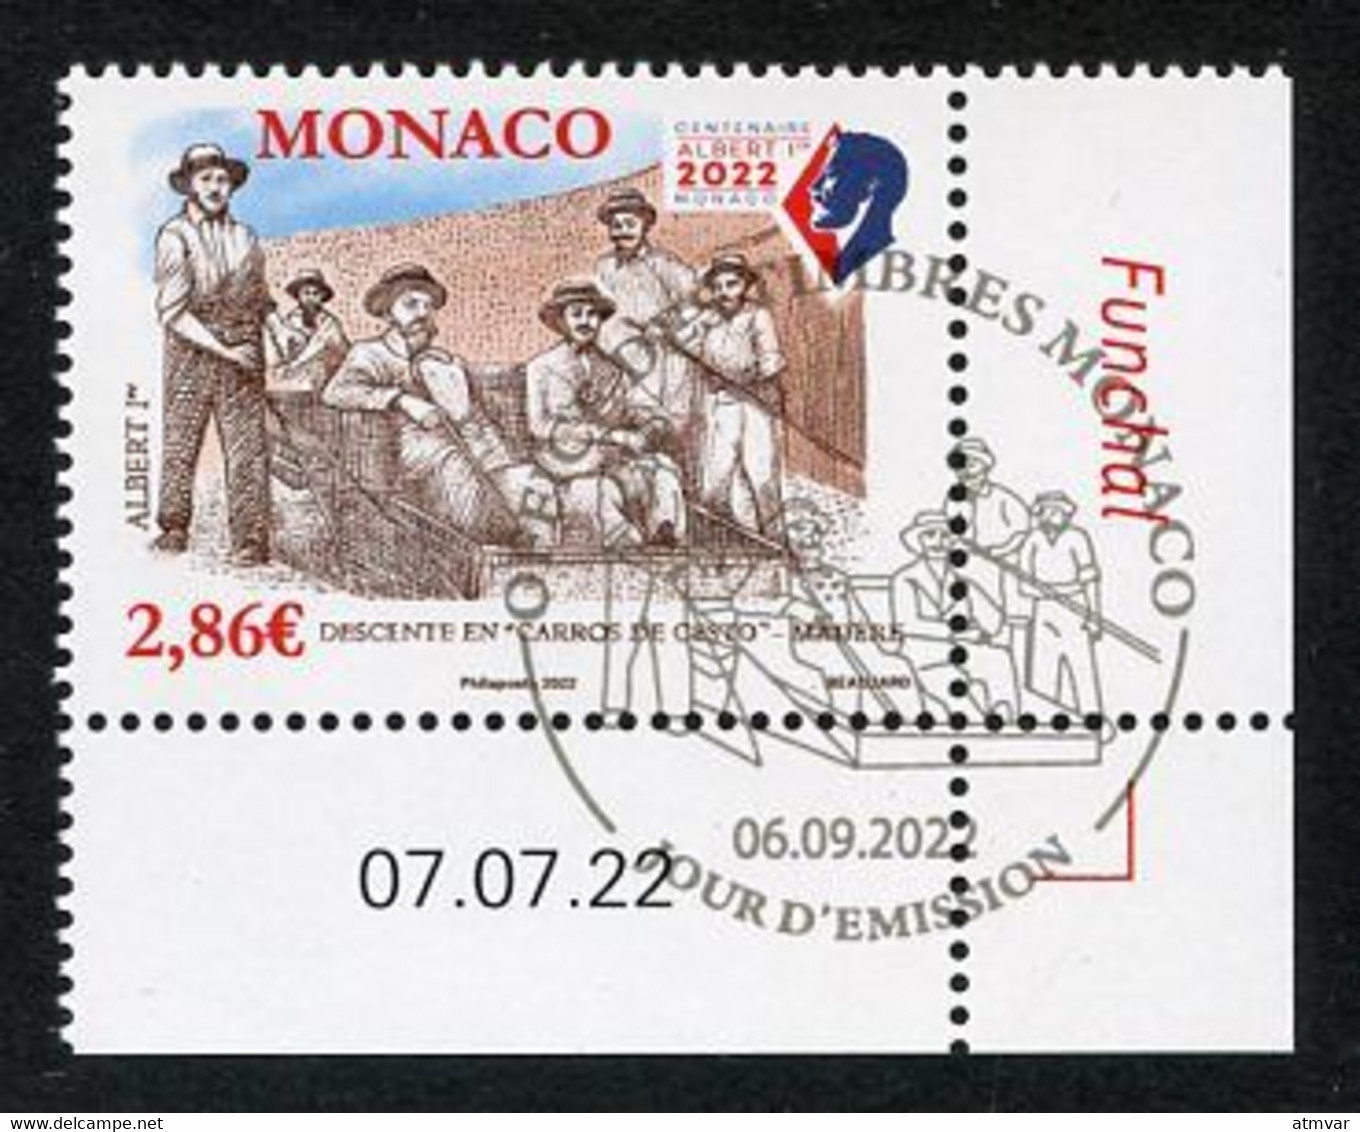 MONACO (2022) Albert 1er Madère Madeira Funchal, Descente En Carros De Cesto - Coin Daté - Usati